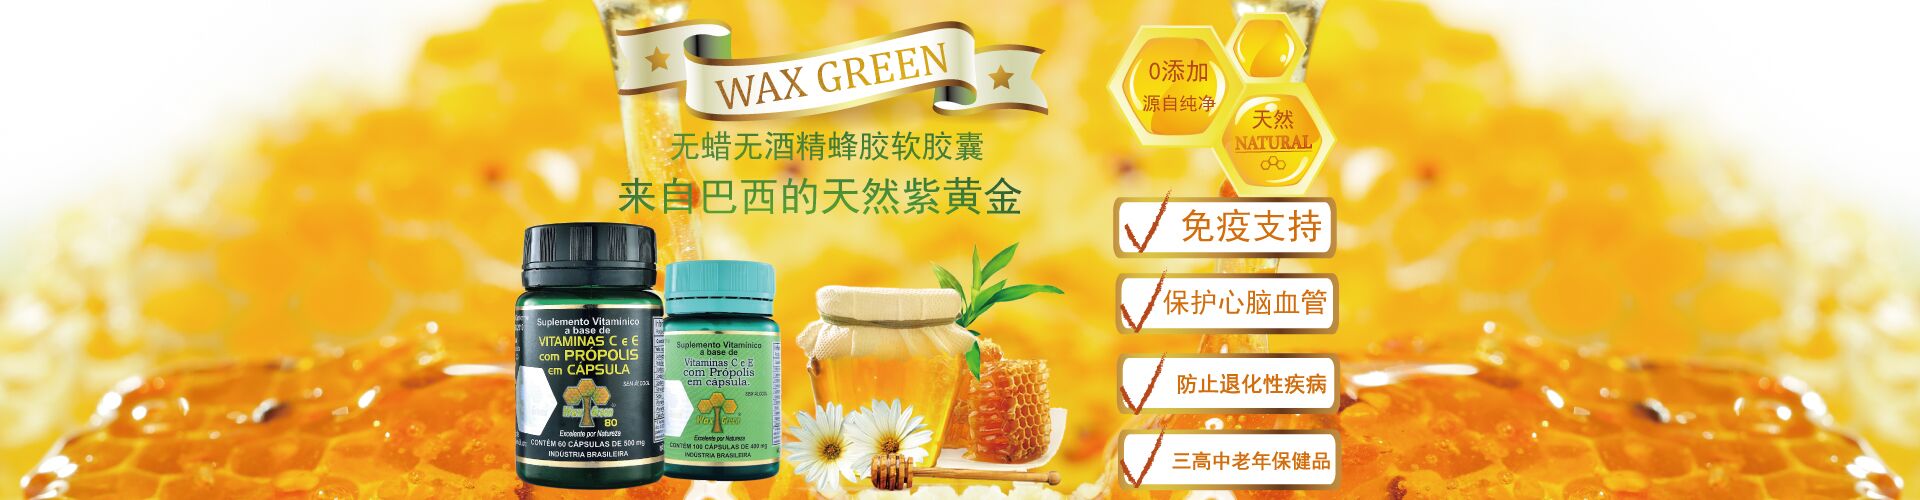 Wax Greenb绿蜂胶